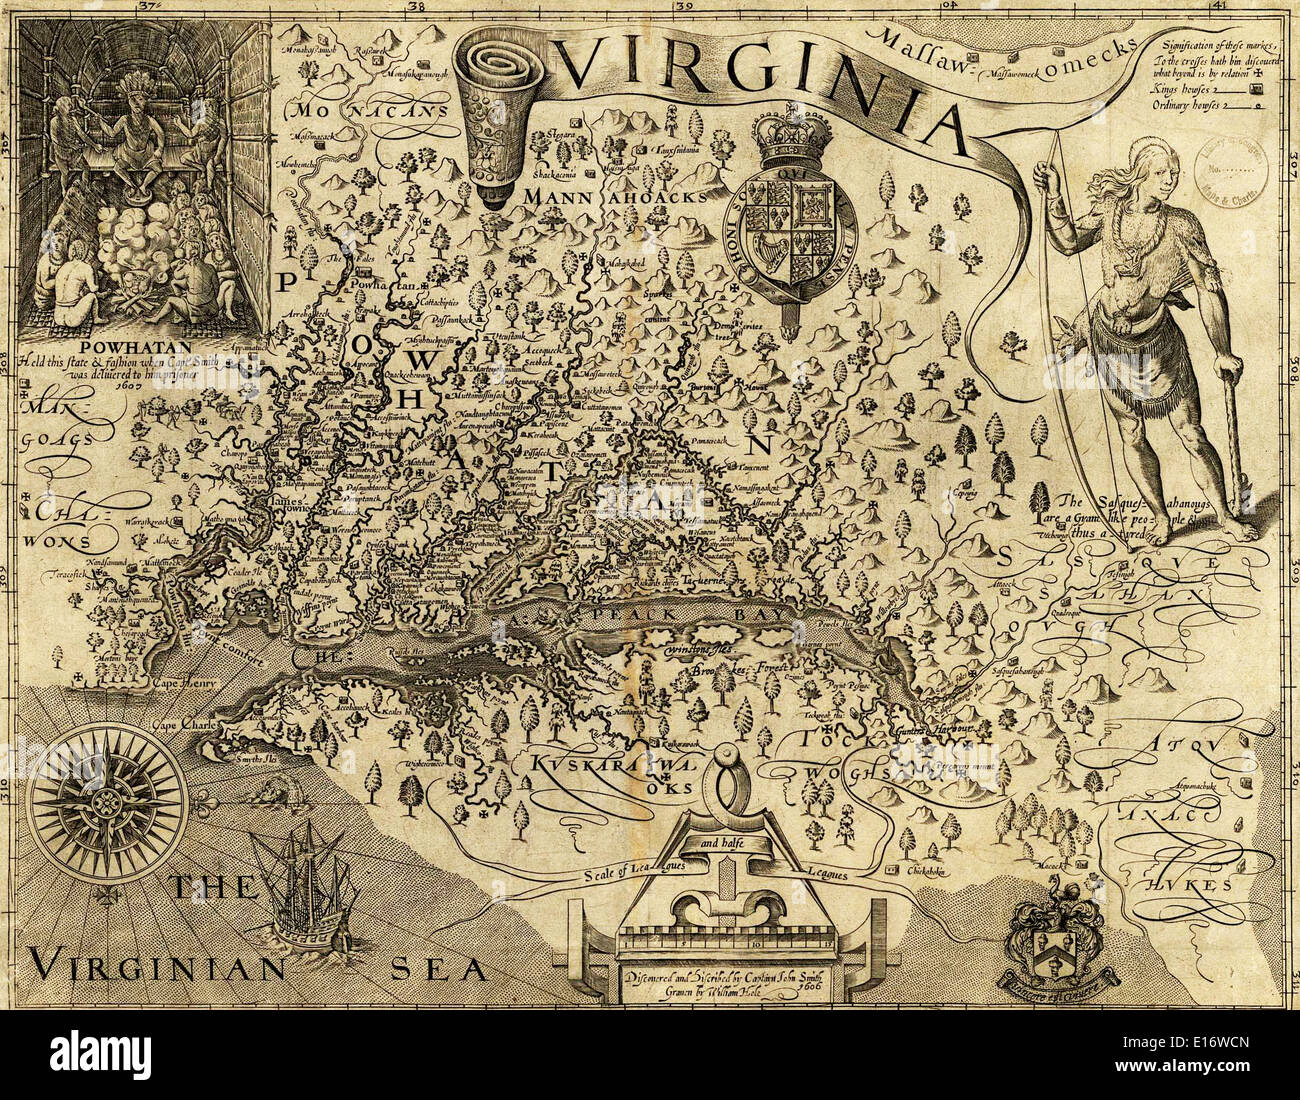 Une carte de Virginie, avec description du pays, les produits de base, les gens, le gouvernement et la religion - par John Smith, 1612 Banque D'Images